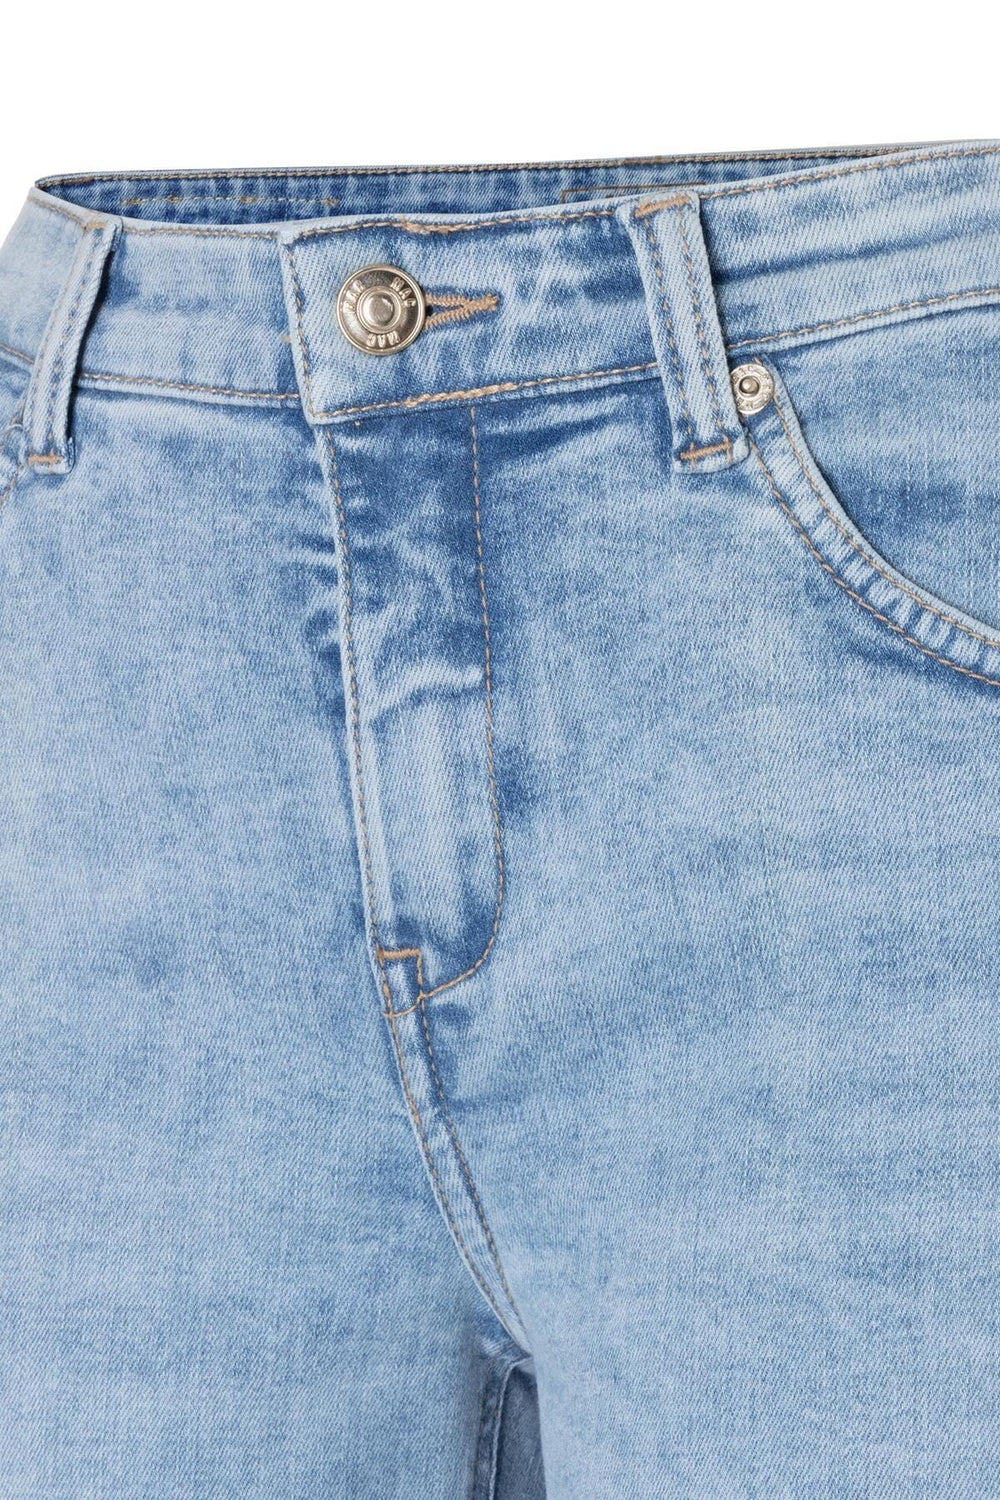 Jean bleu délavé Femme - Bas - Pantalon - Jeans Mac Jeans